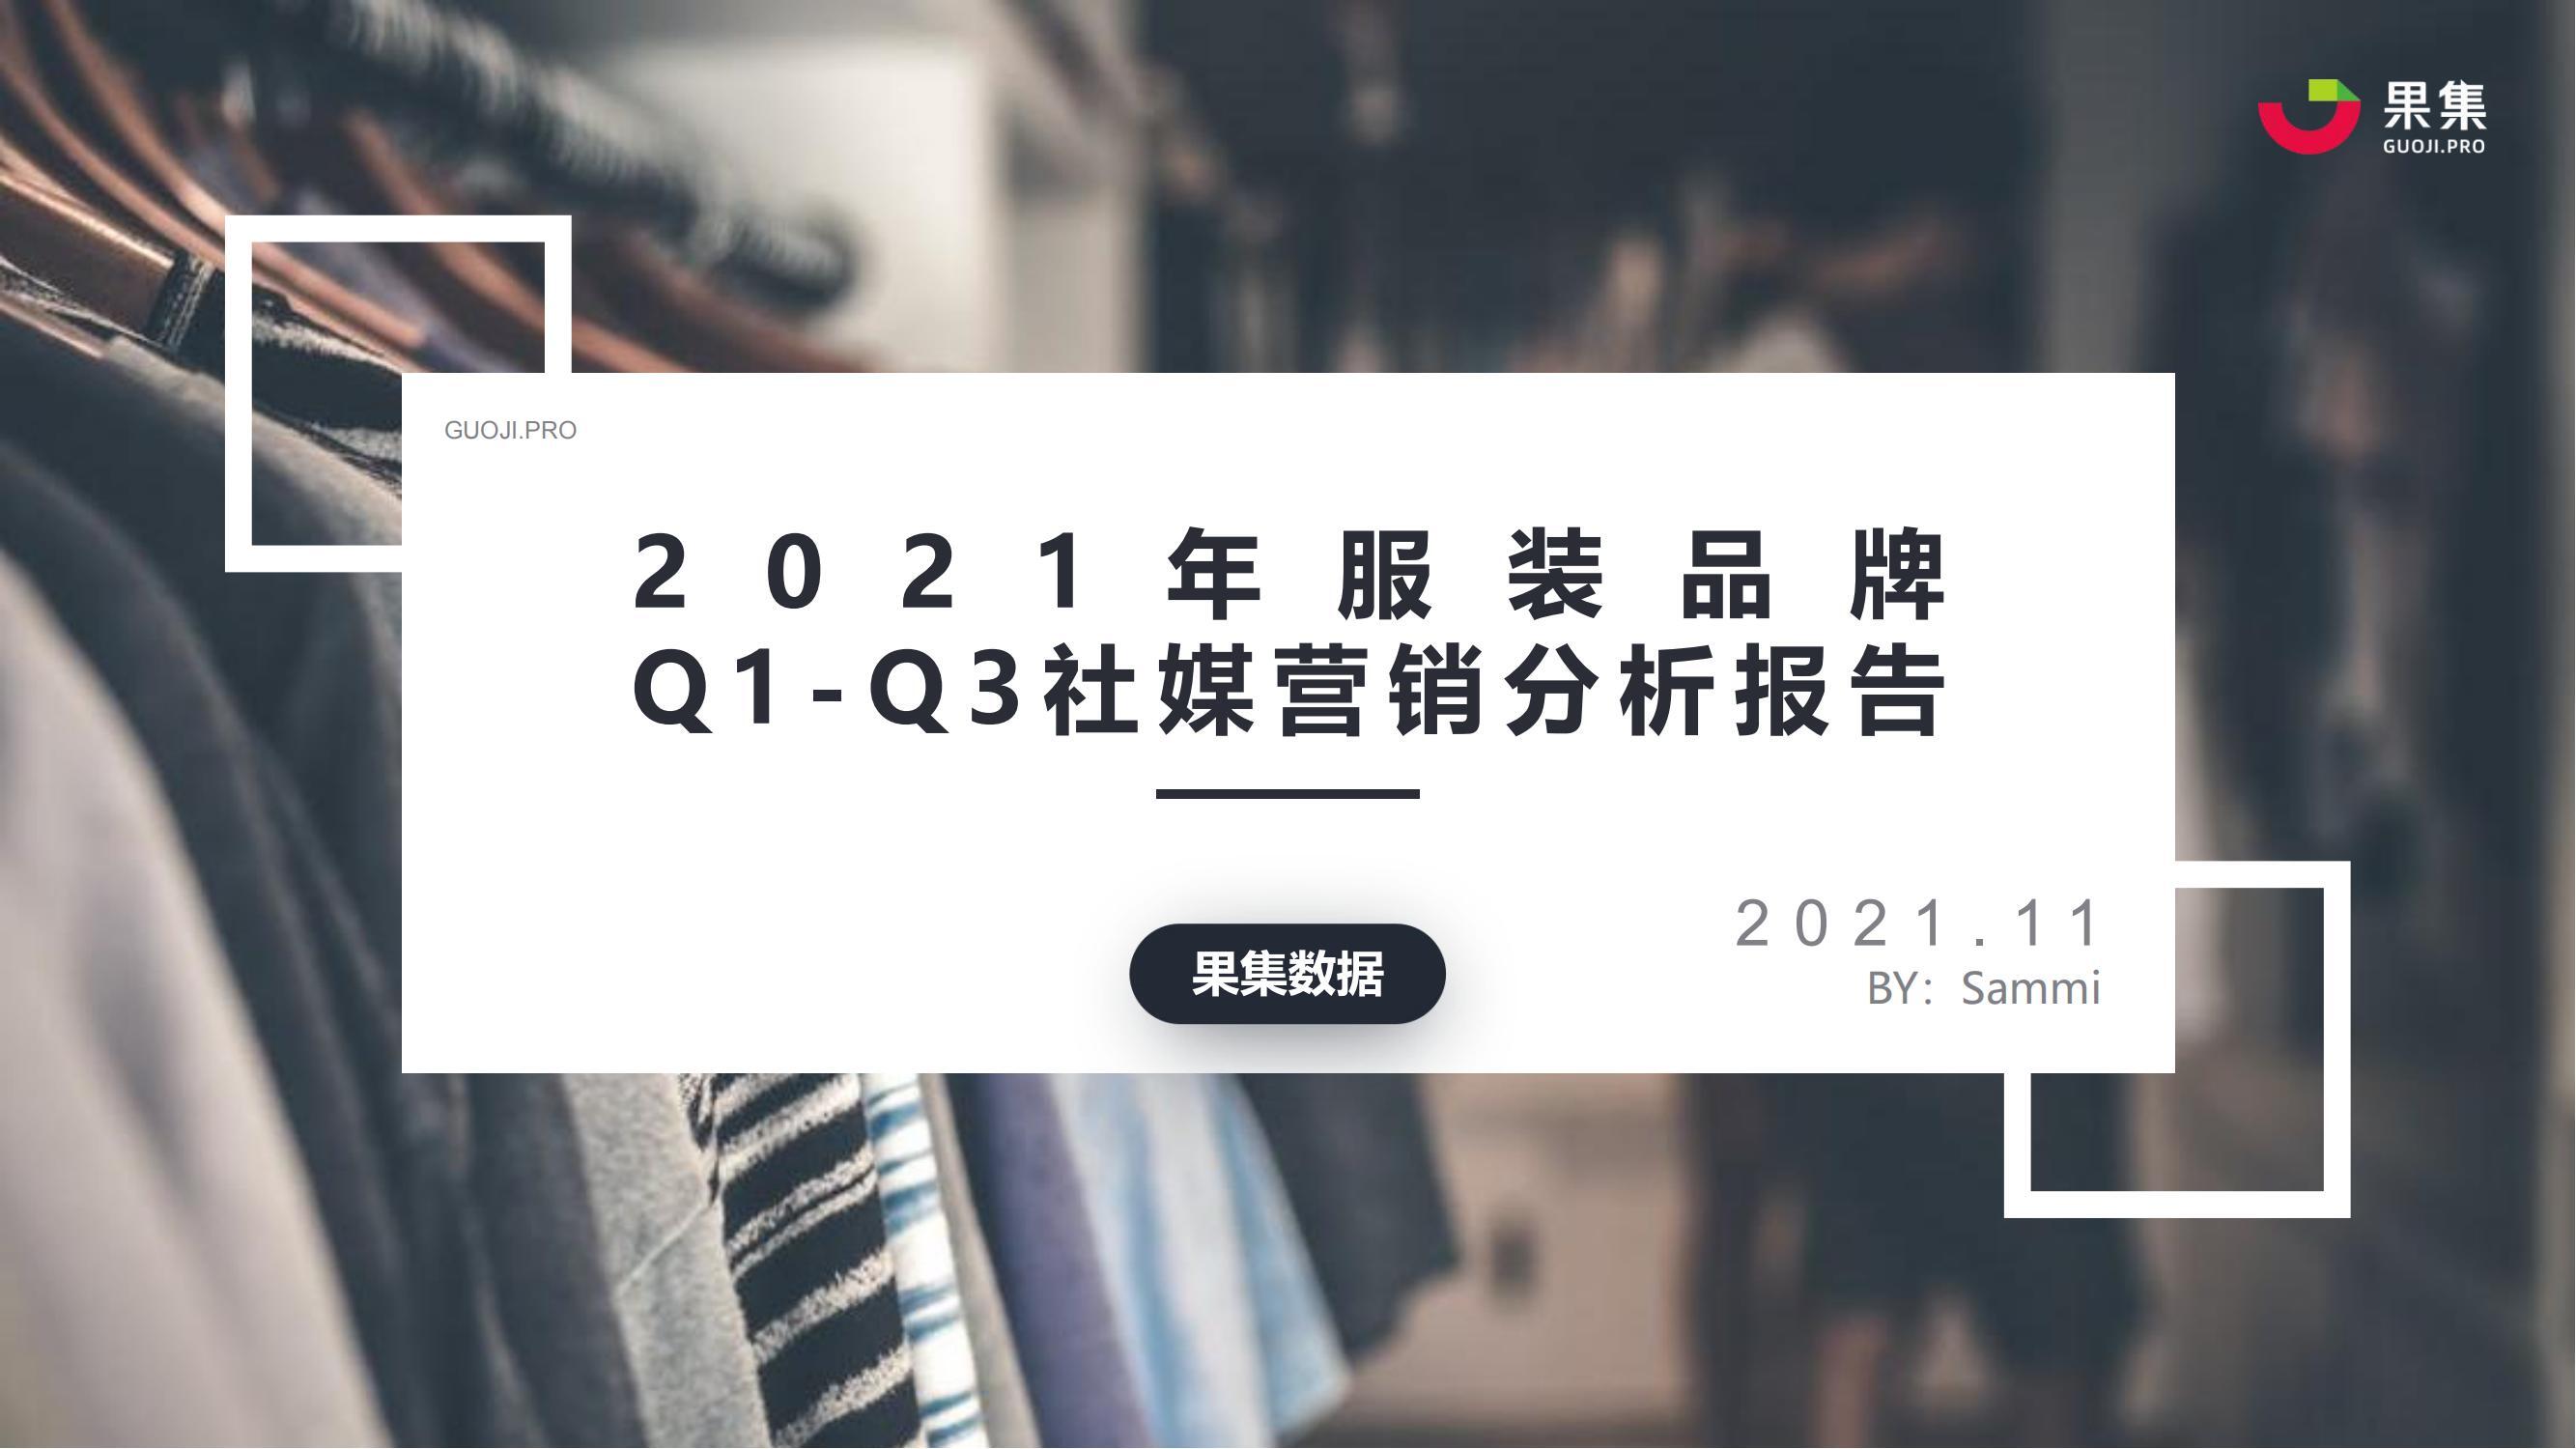 服装品牌Q1-Q3营销分析报告